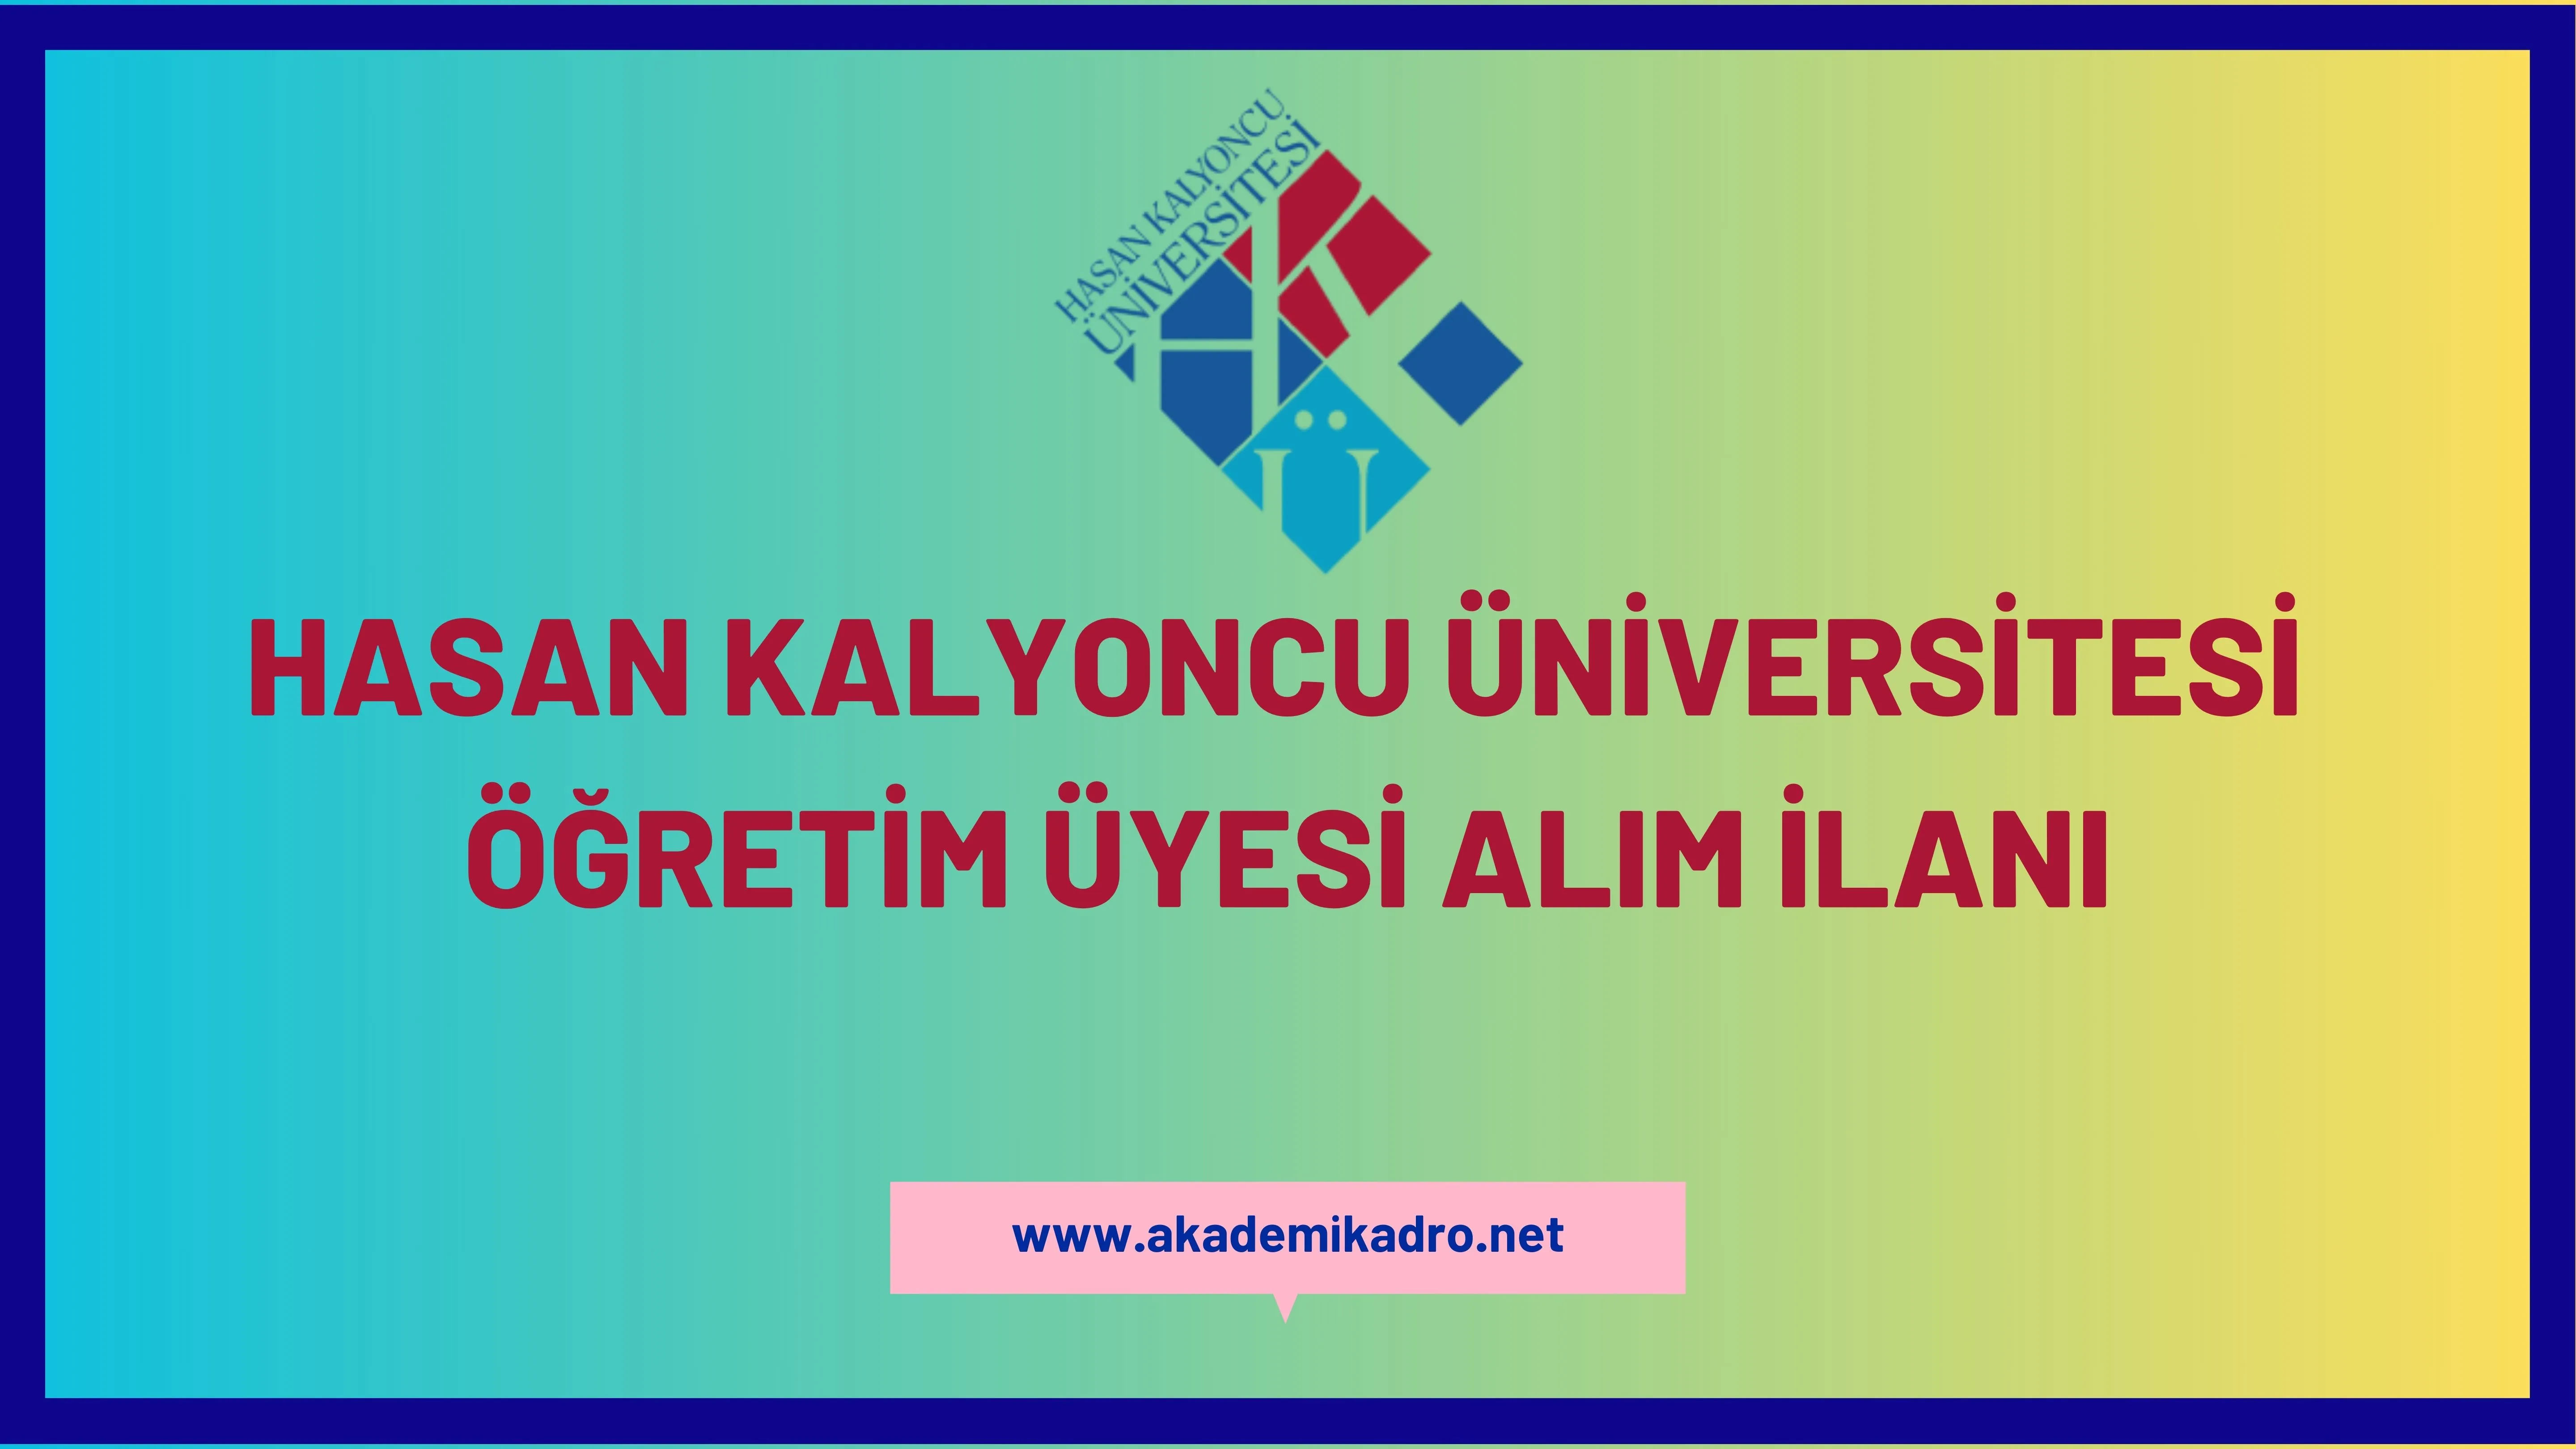 Hasan Kalyoncu Üniversitesi 33 öğretim üyesi alacaktır.